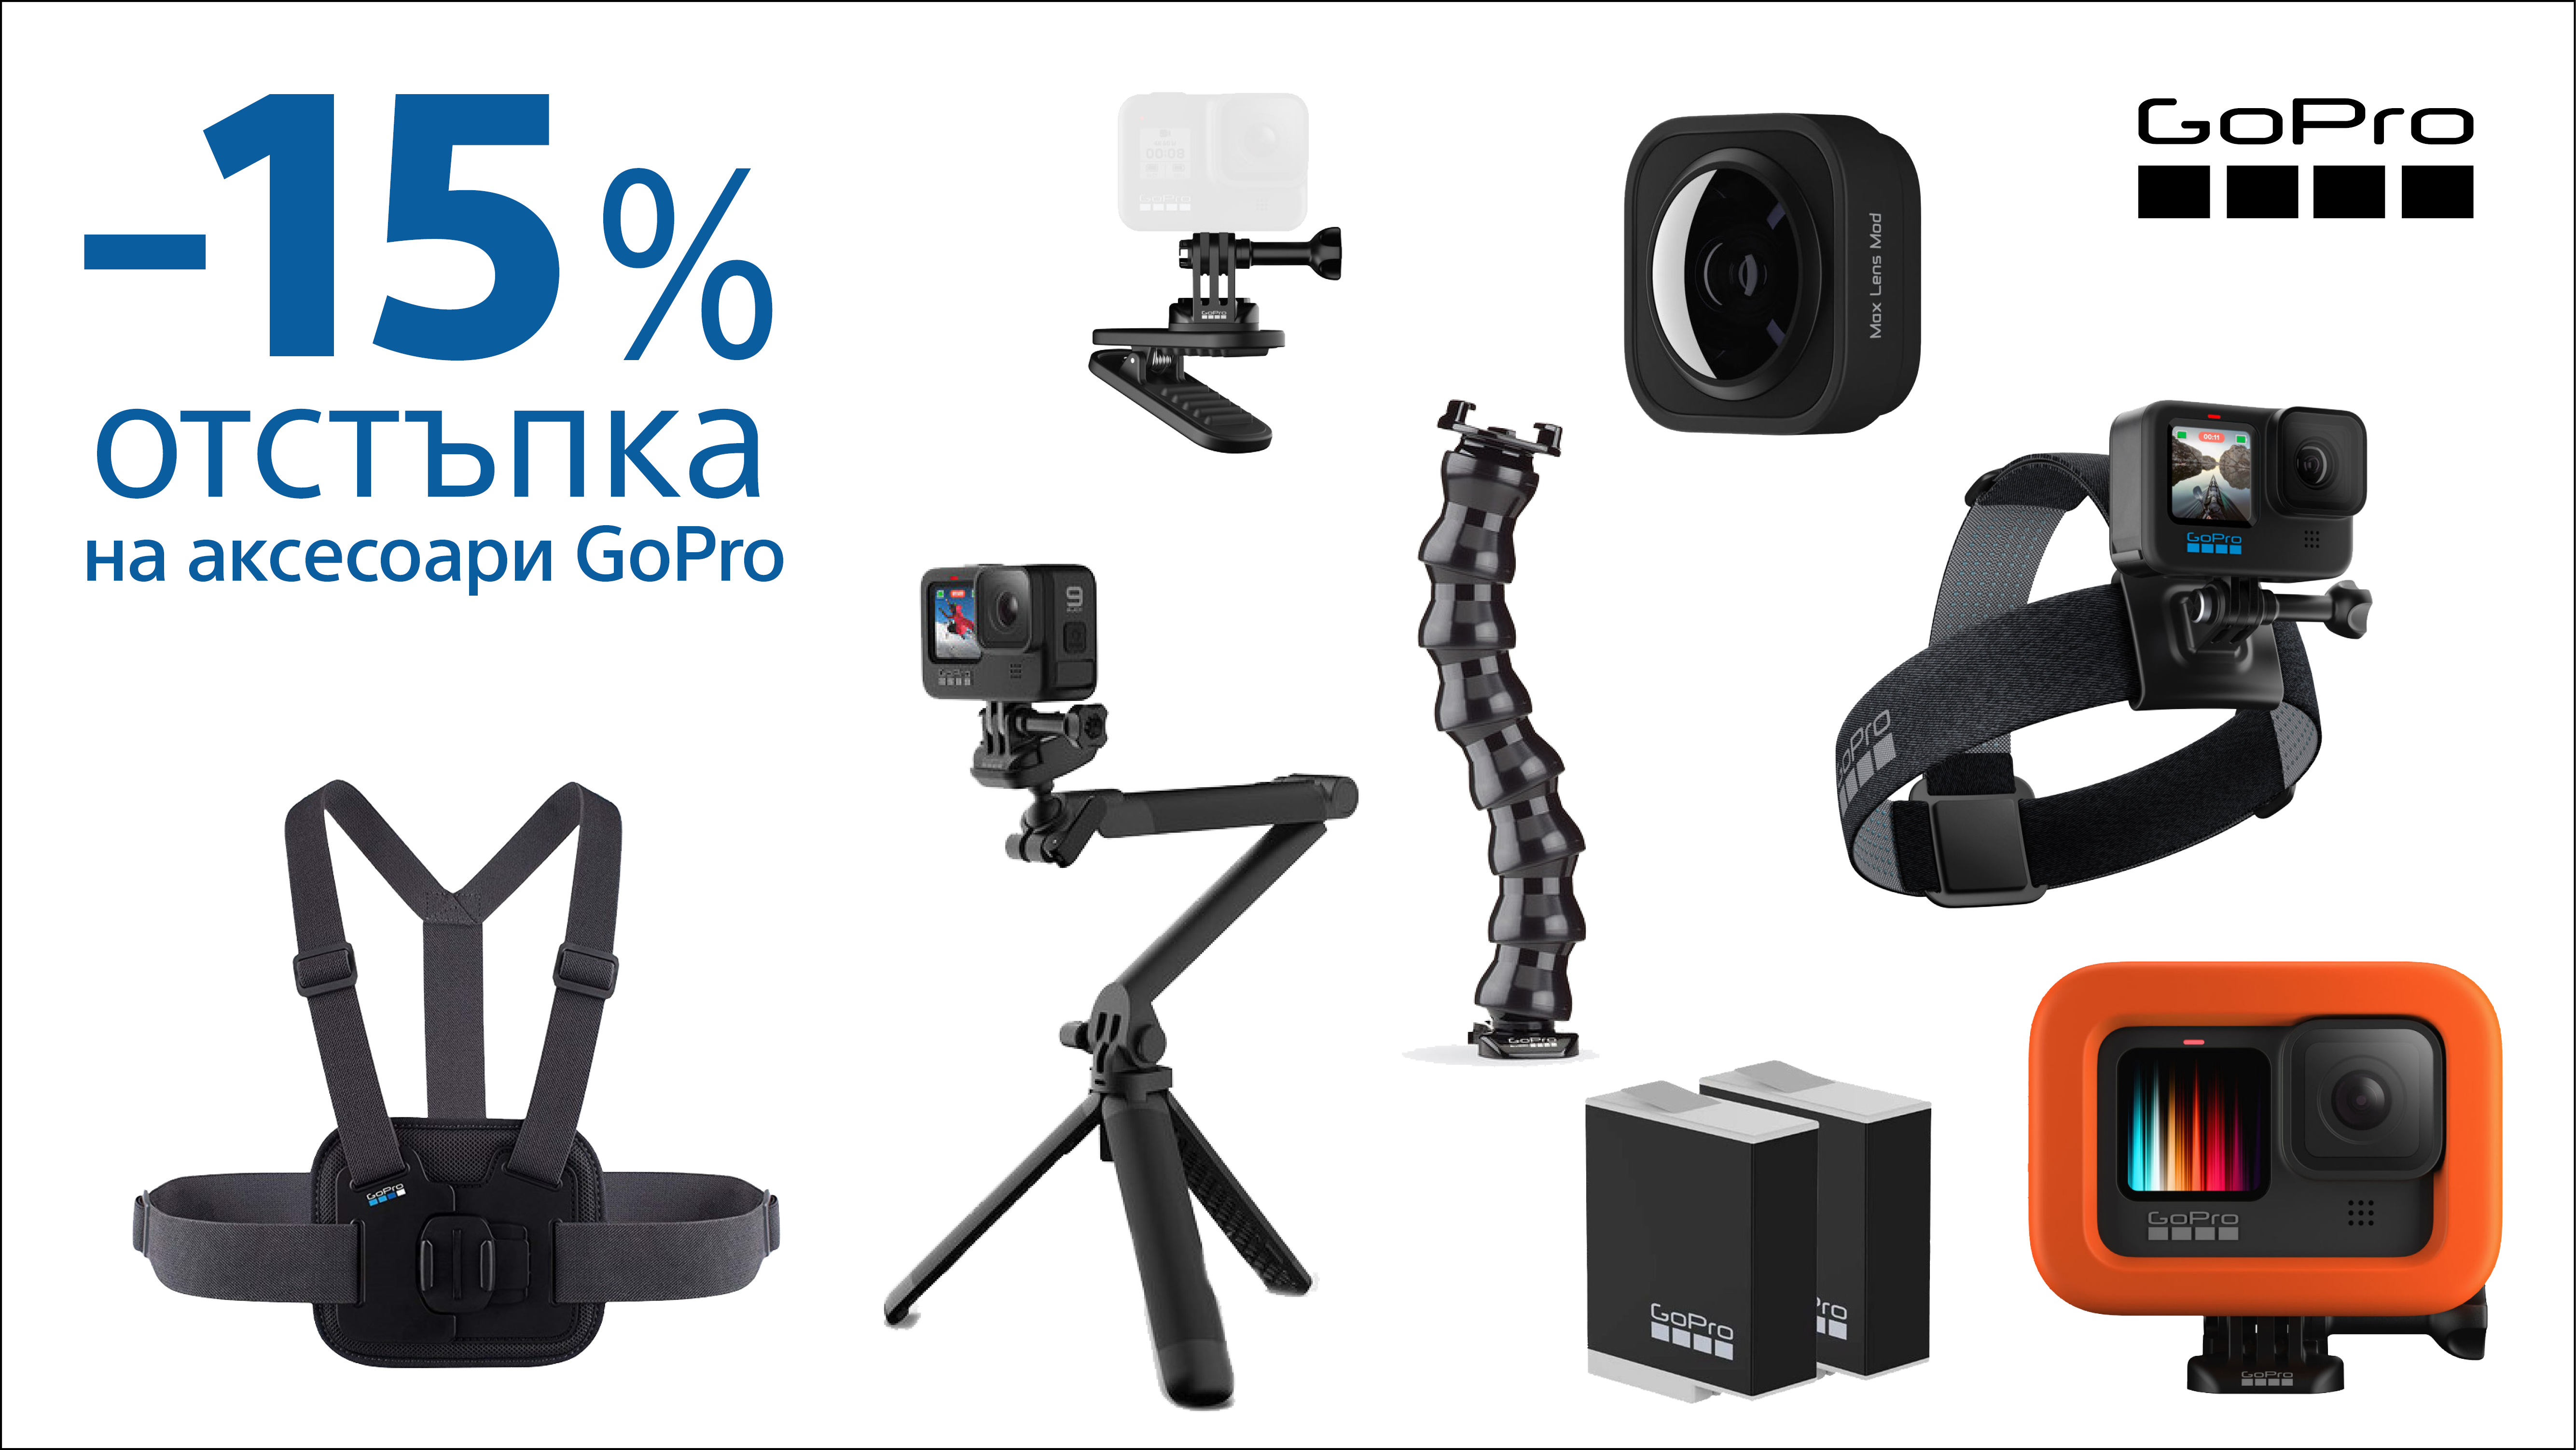  Get 15% OFF GoPro accessories until 30.04